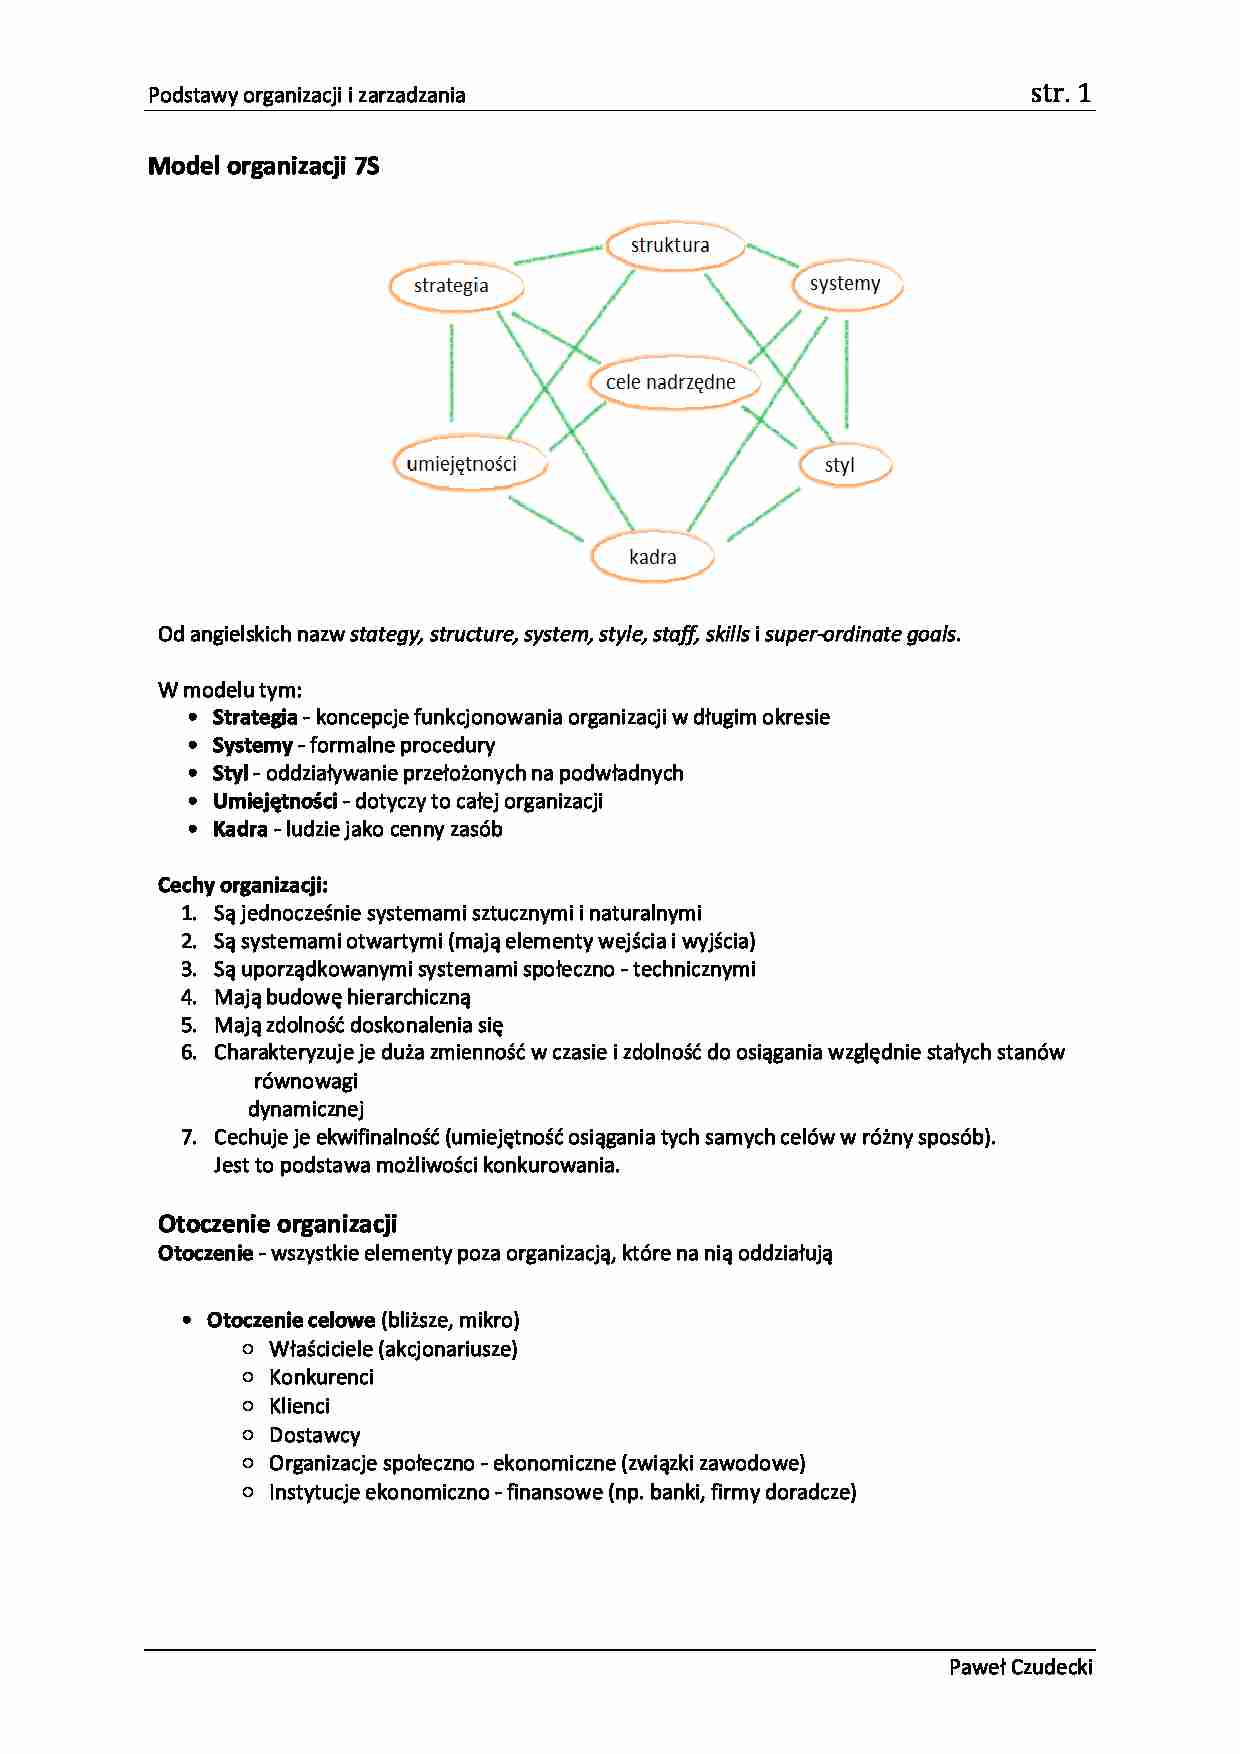 Podstawy organizacji i zarządzania -  Model 7s otoczenie organizacji WYKŁAD - strona 1